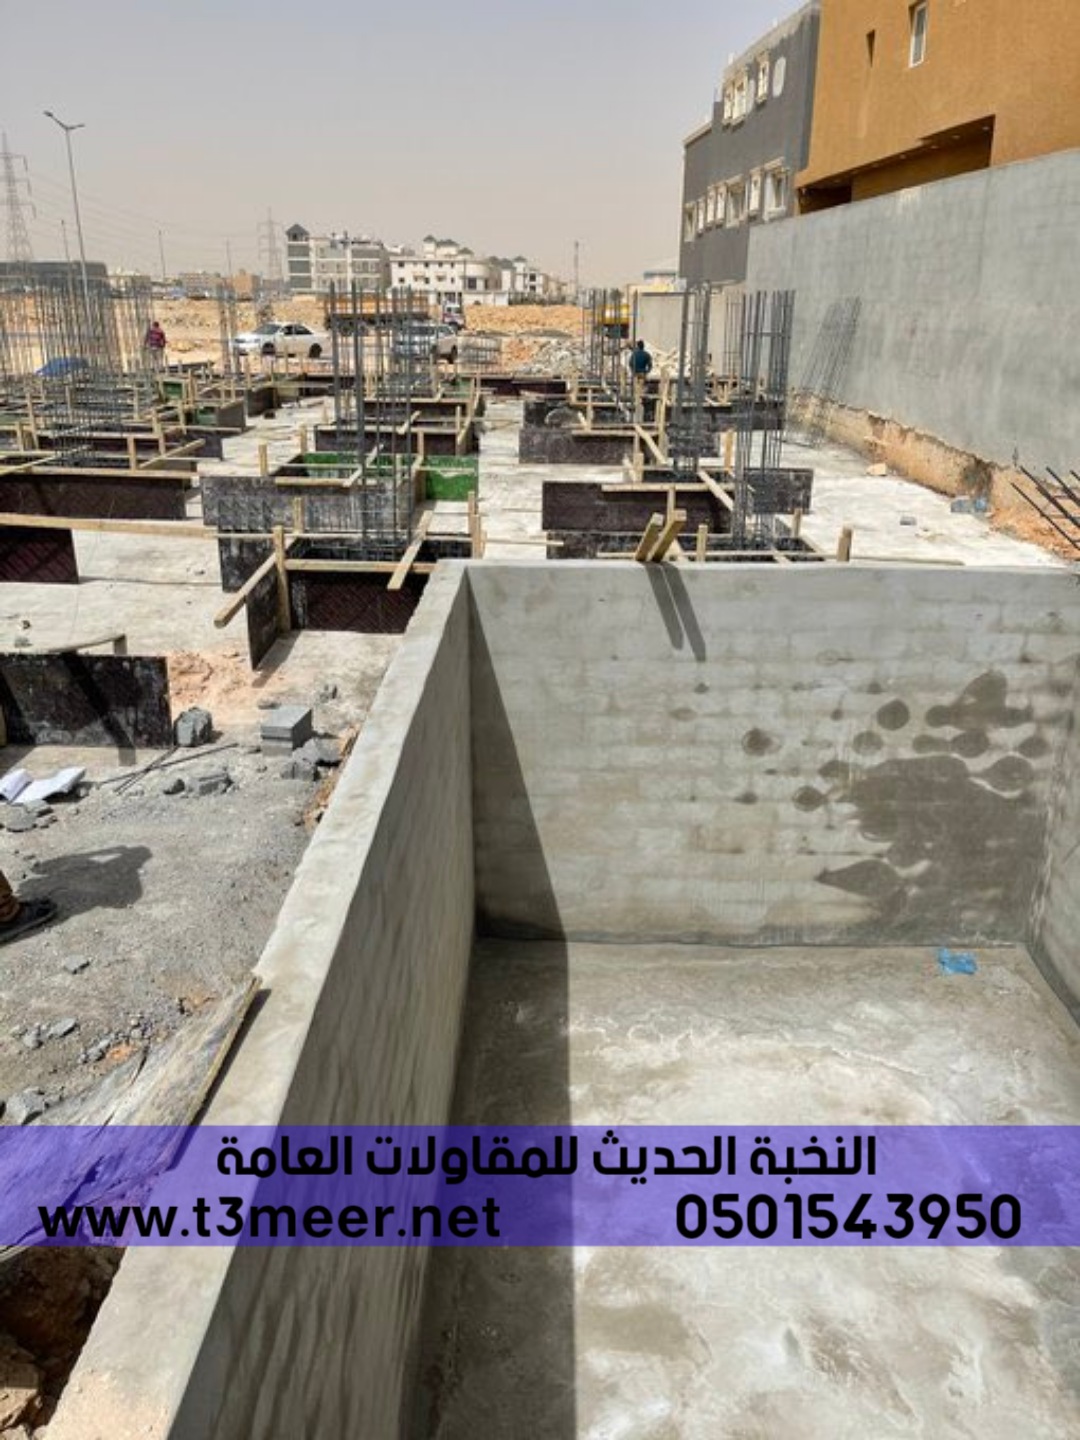 بناء عظم بالمواد او بدون في الرياض , 0501543950 P_2431r69p08